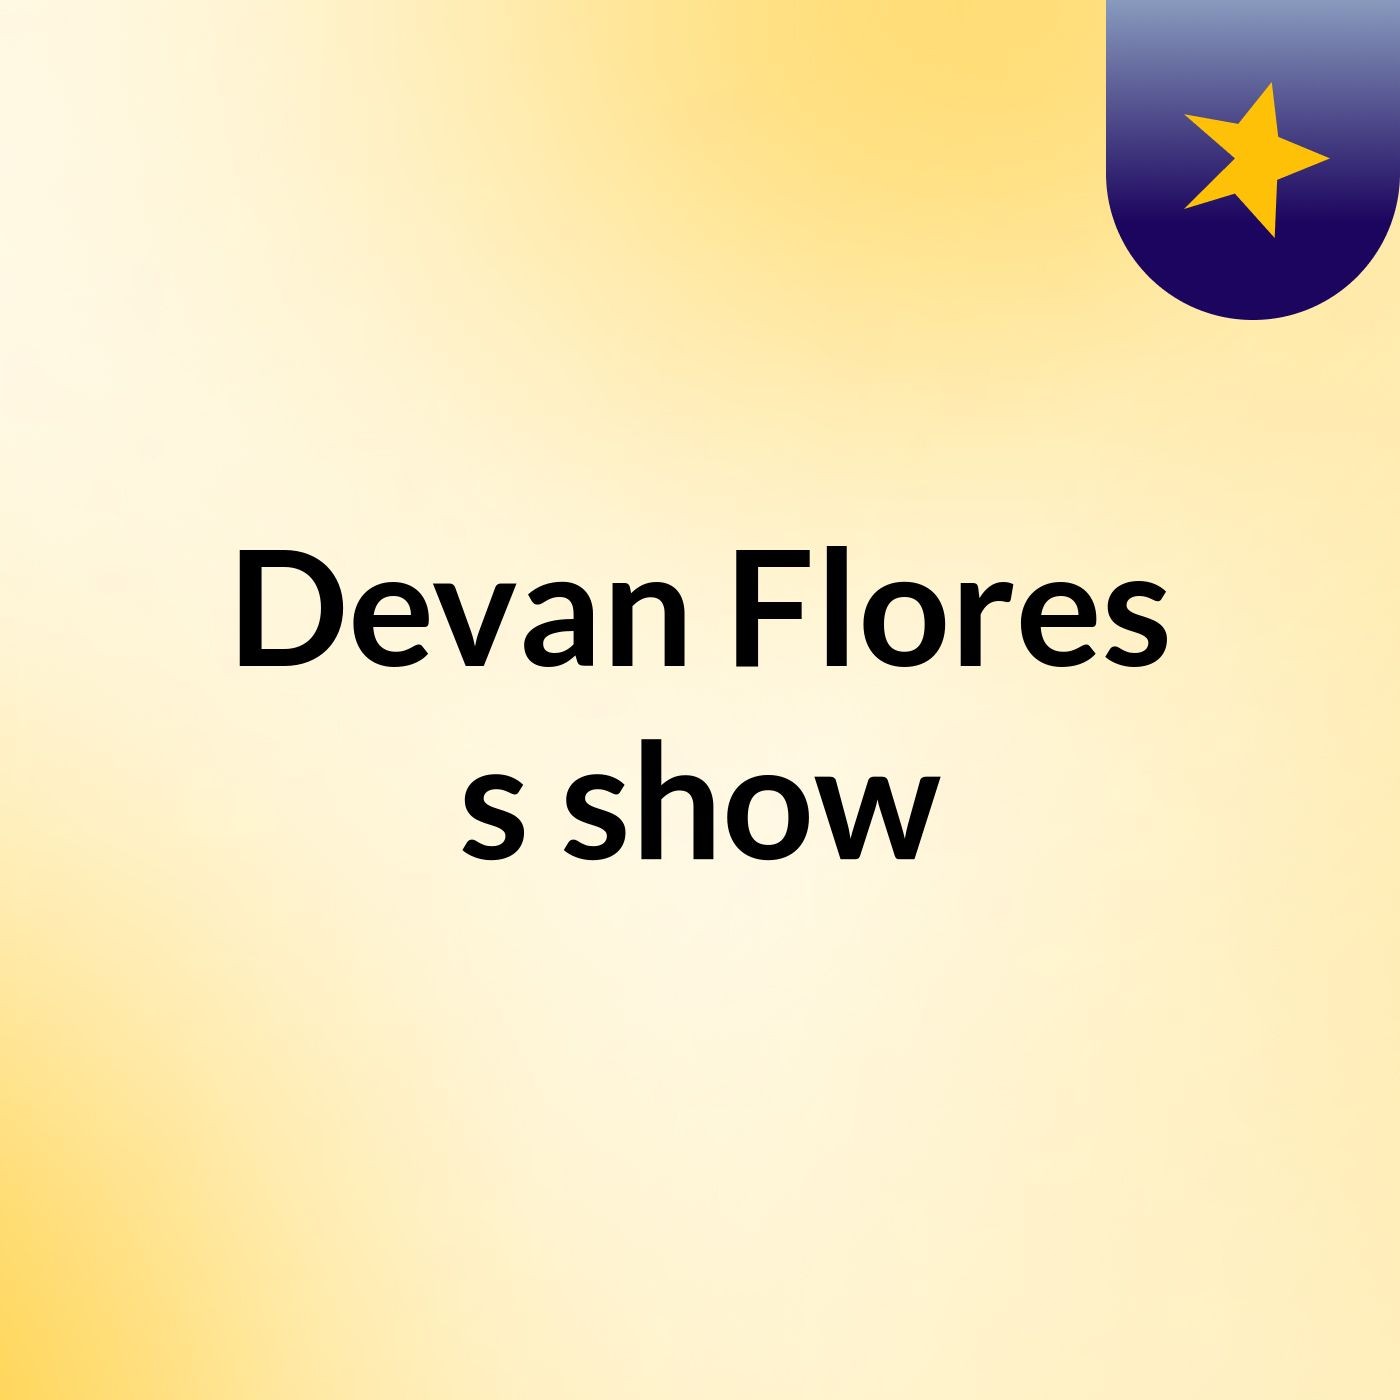 Devan Flores's show